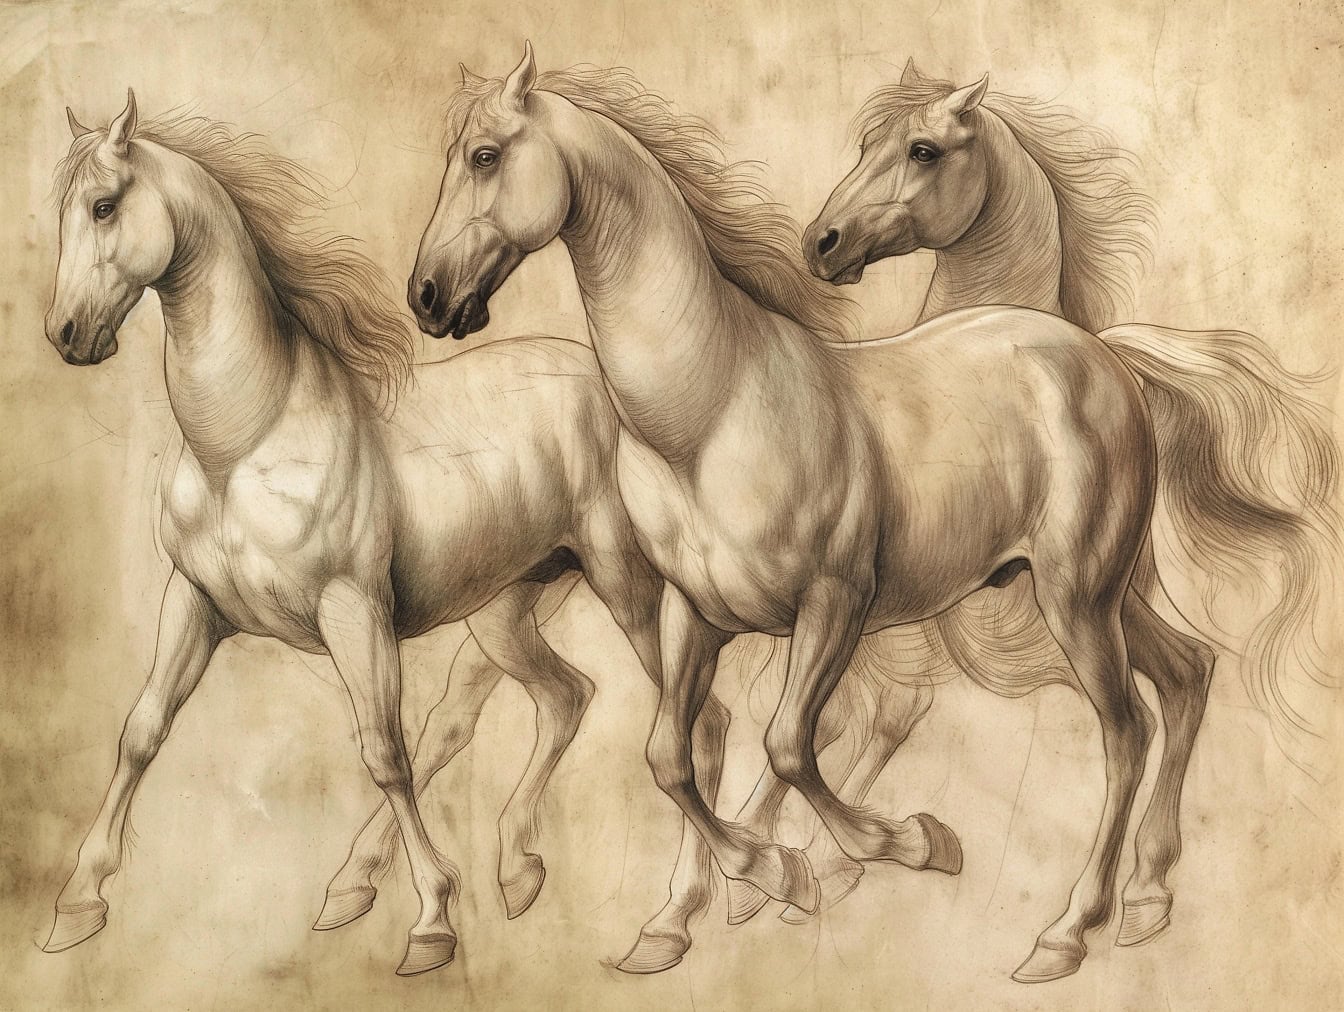 Dörtnala uzun yeleli üç atın el çizimi, eski soluk sarımsı kağıda bir eskiz